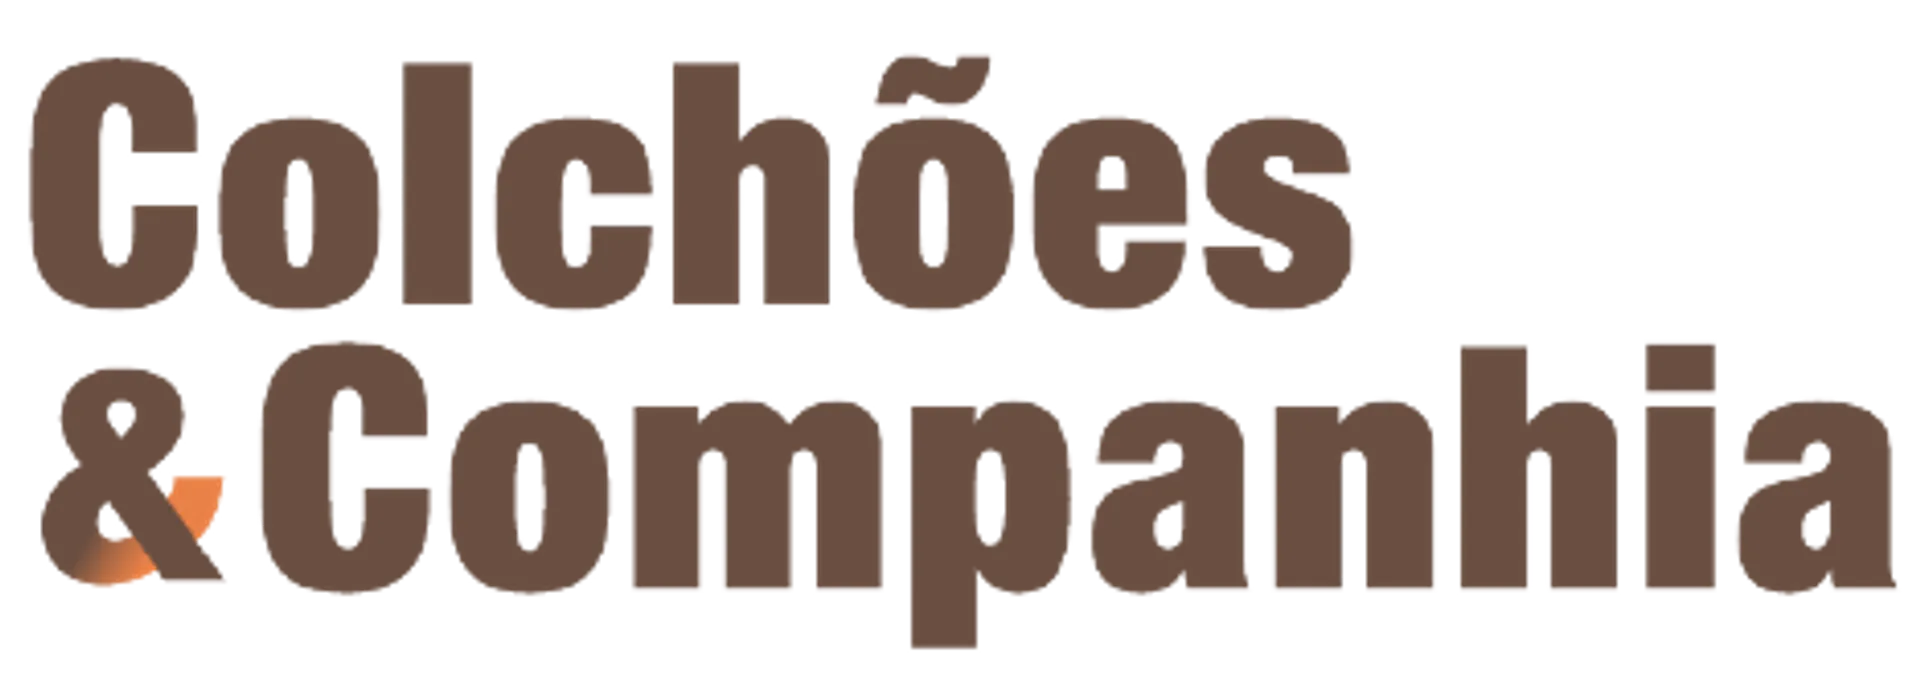 COLCHOES & COMPANHIA logo de folhetos